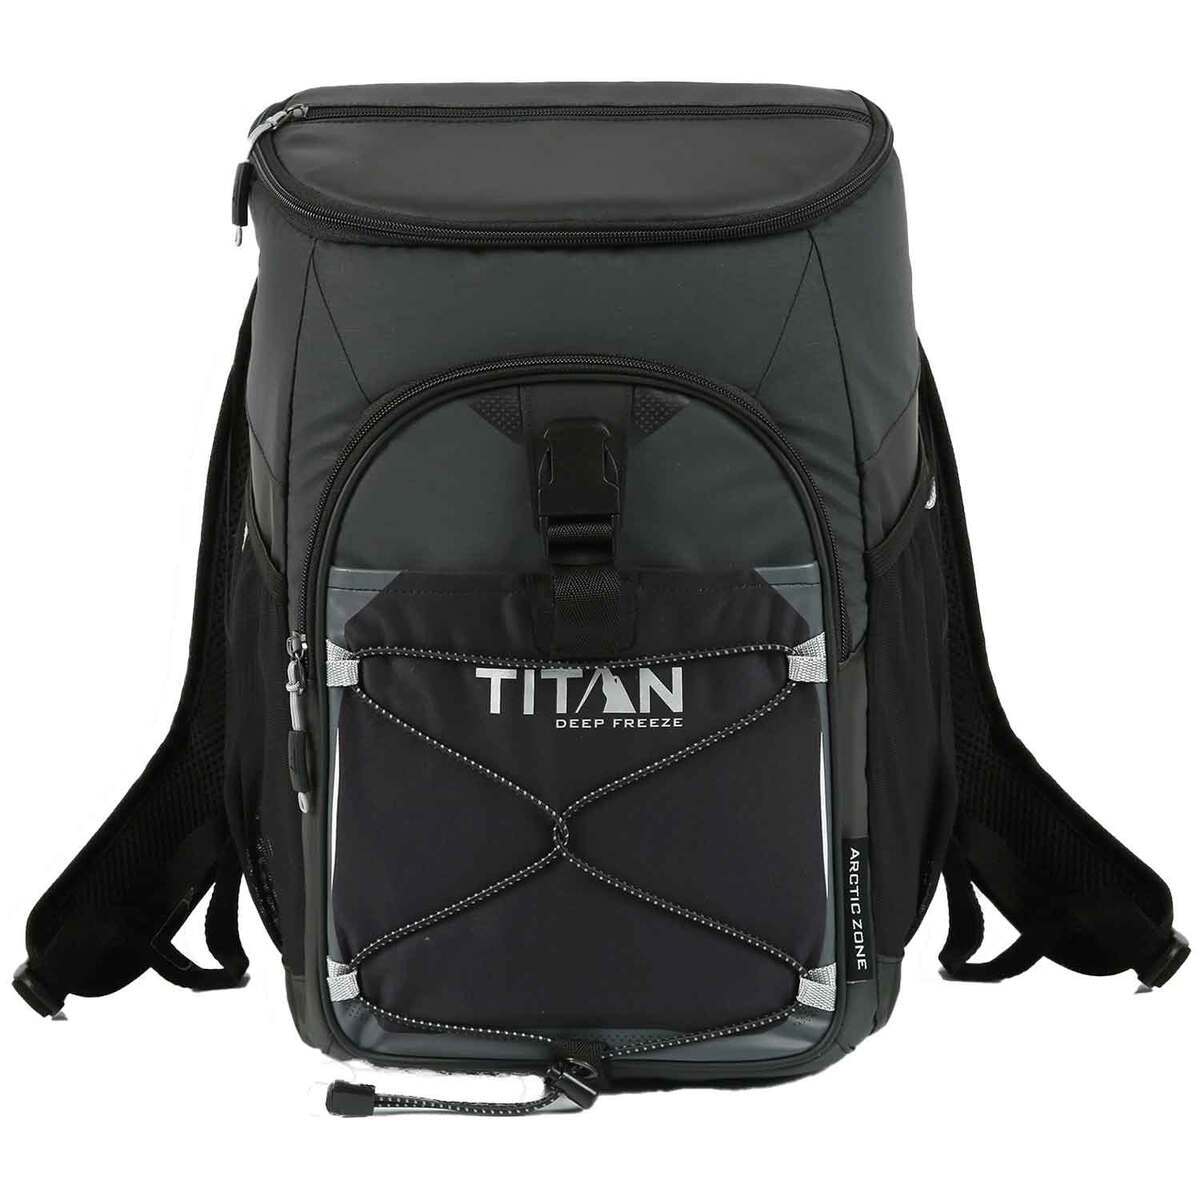 https://www.sportsmans.com/medias/titan-deep-freeze-24-can-backpack-cooler-black-1724631-1.jpg?context=bWFzdGVyfGltYWdlc3w3NTUwMHxpbWFnZS9qcGVnfGg1YS9oZTAvMTA3NDYyNTI4ODYwNDYvMTcyNDYzMS0xX2Jhc2UtY29udmVyc2lvbkZvcm1hdF8xMjAwLWNvbnZlcnNpb25Gb3JtYXR8MWIzYTlhMjhhYTc3ODgyYTU0YjY2M2RhYWIwNWNlM2RhOWFkNGNjNWZkNTk5MGIwNzdlZDU3ZDYxZGM0YzYyNw